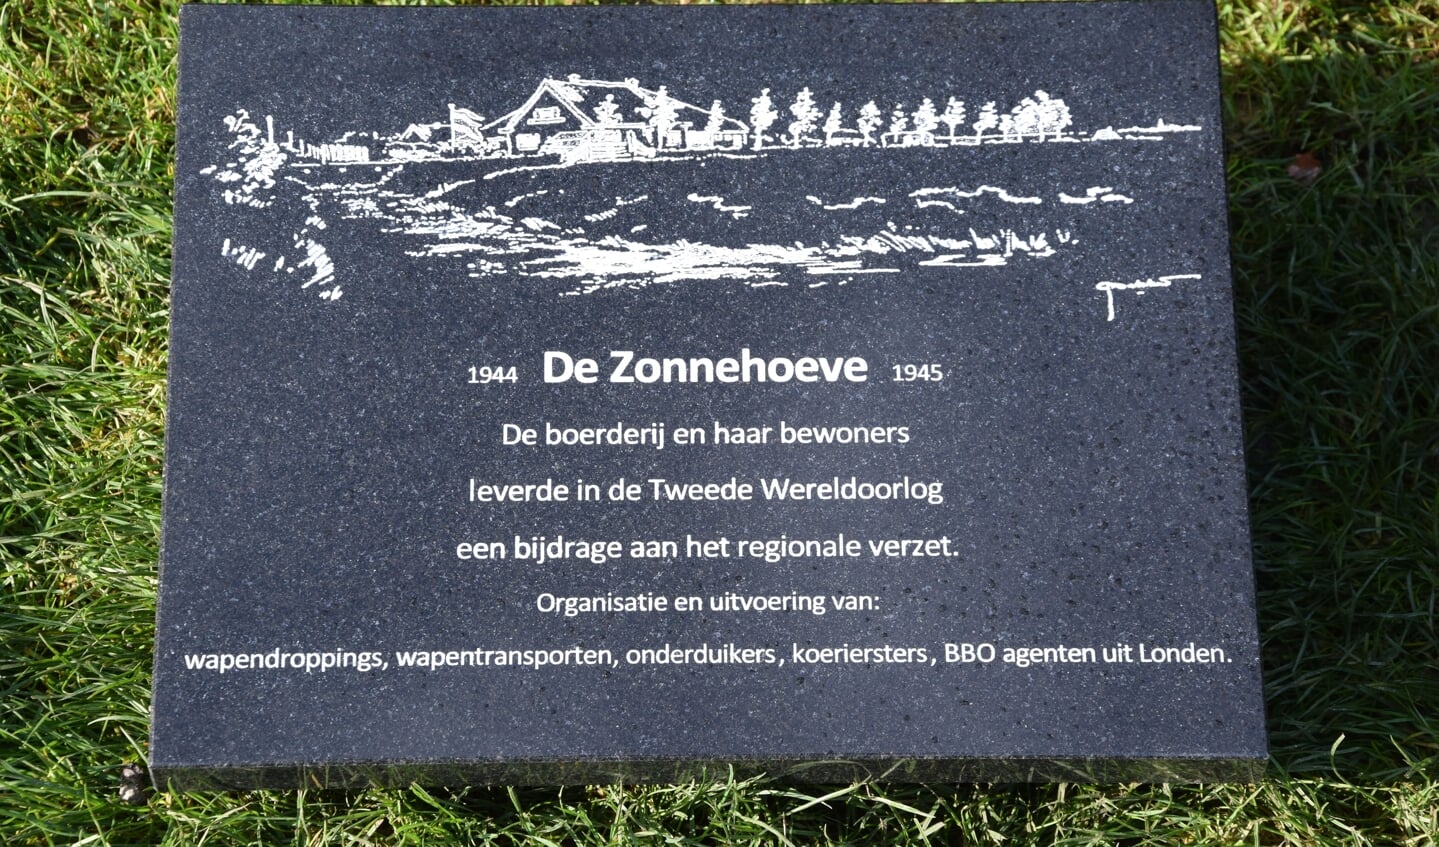 De gedenkplaat van Zonnehoeve, gemaakt door Frits van der Starre.